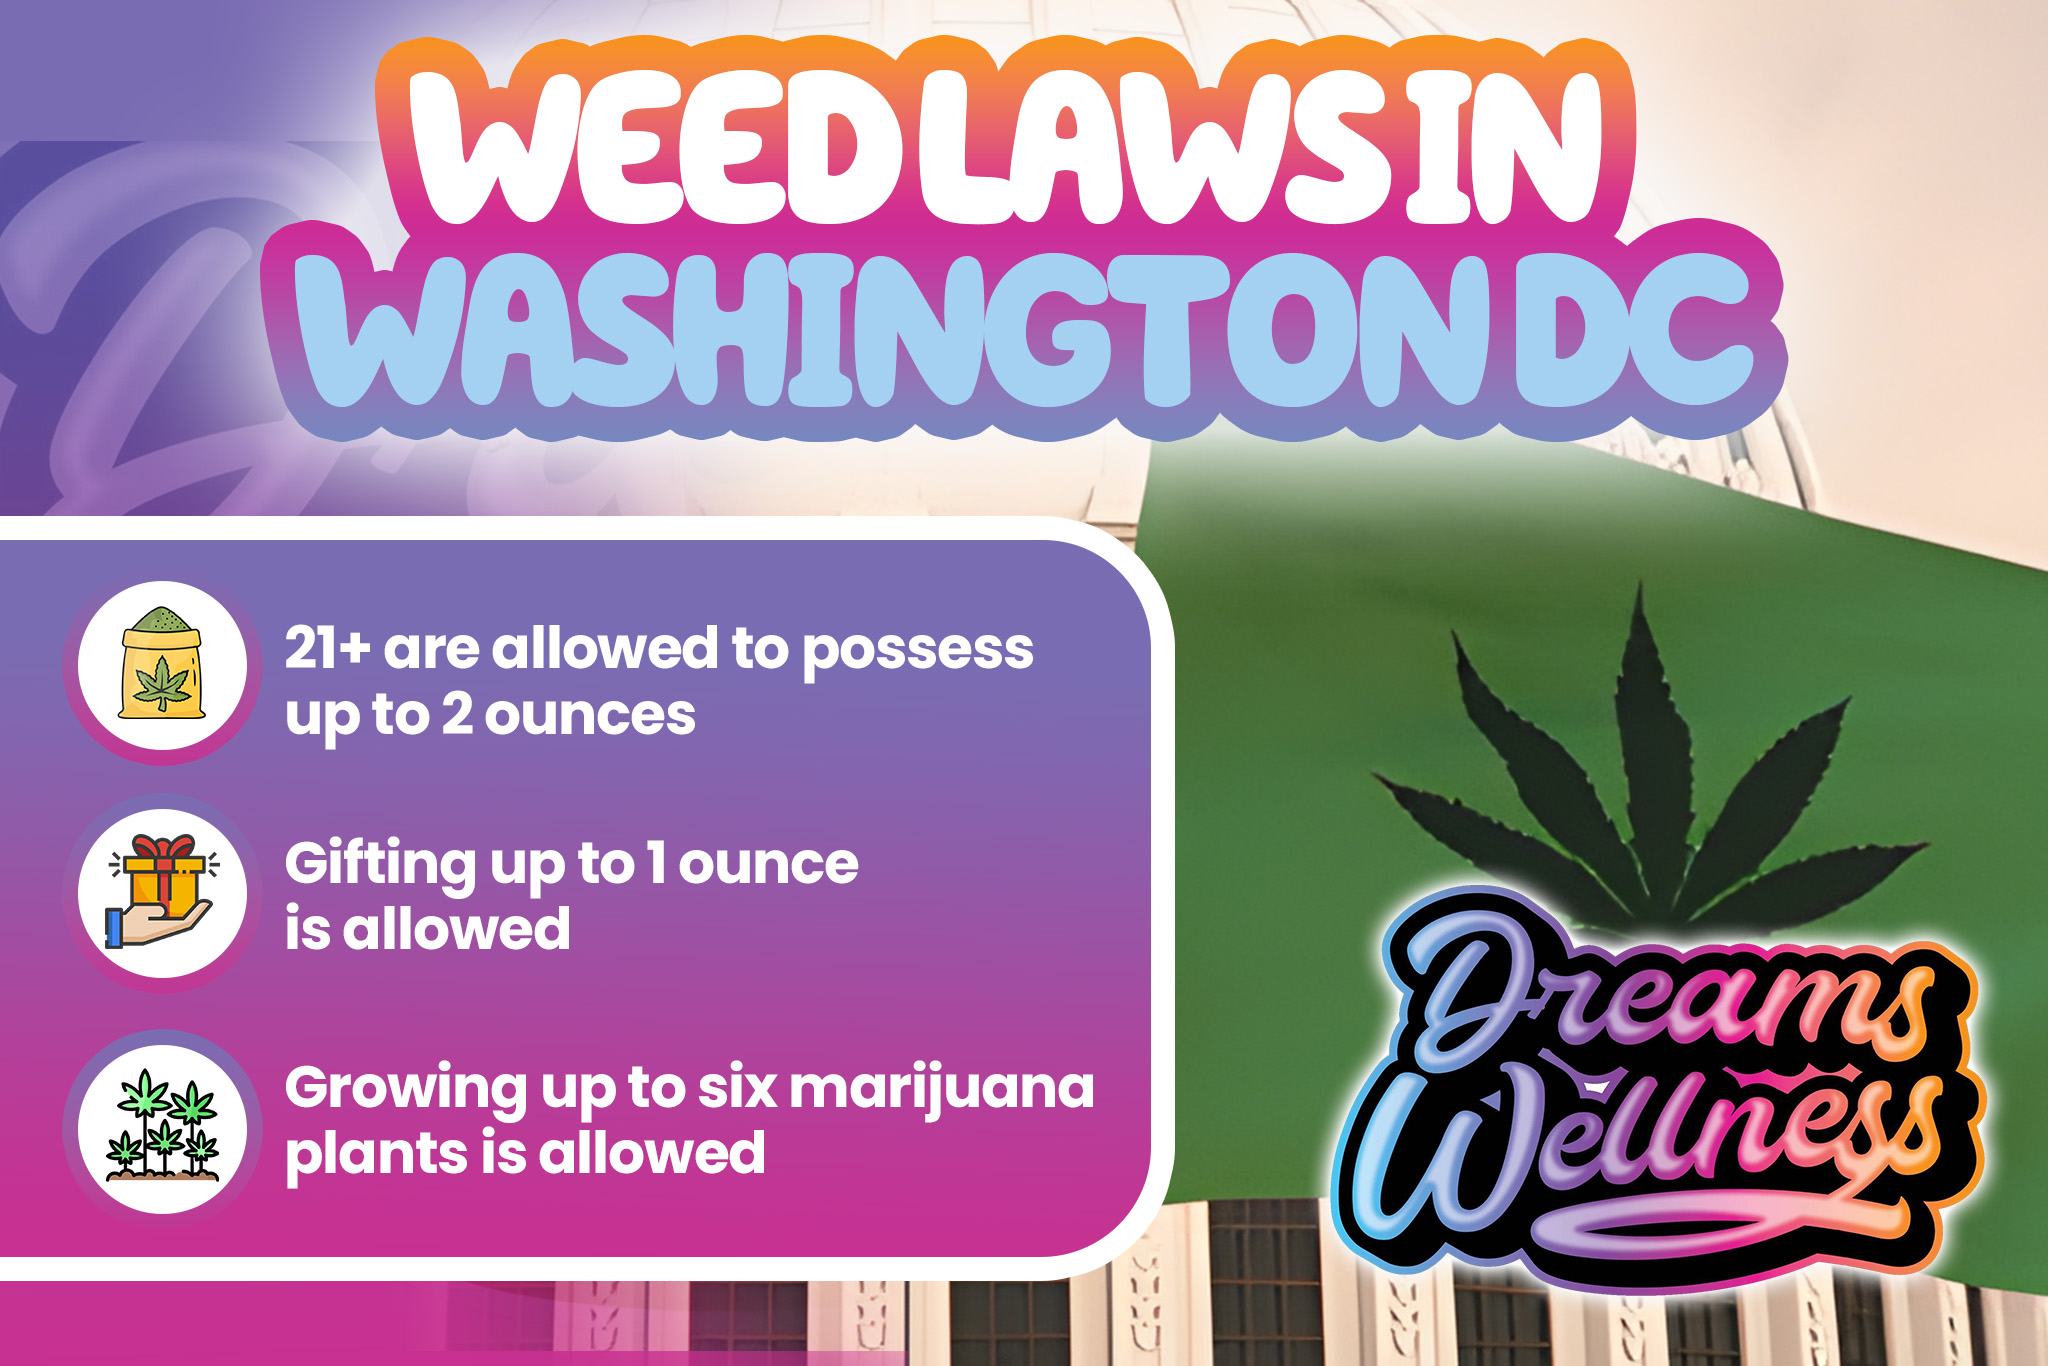 weed laws in washington